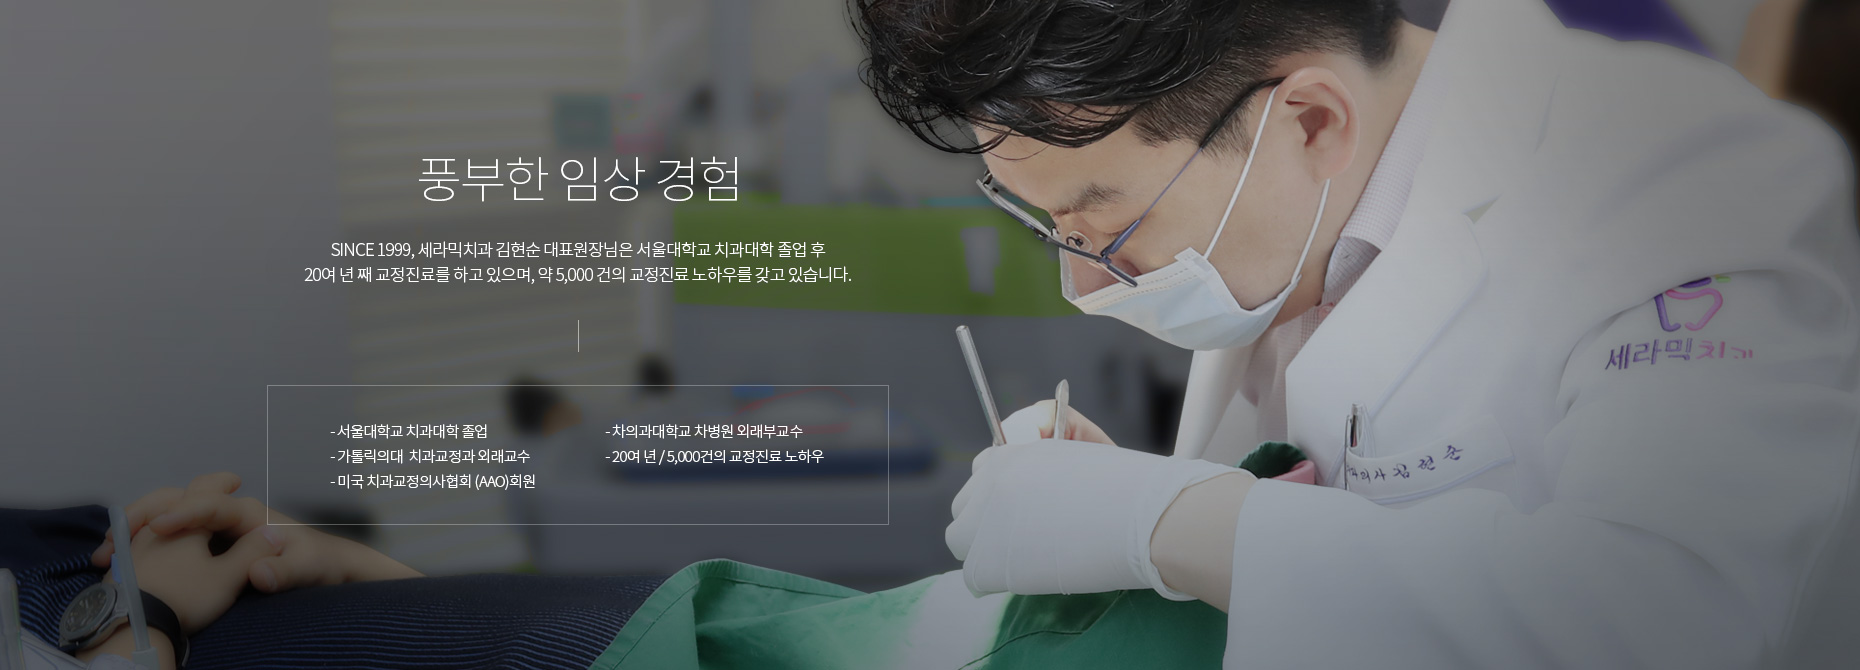 풍부한 임상 경험:SINCE 1999, 세라믹치과 김현순 대표원장님은 서울대학교 치과대학 졸업 후 19년 째 교정진료를 하고 있으며, 약 2,500 여 건의 교정진료 노하우를 갖고 있습니다.